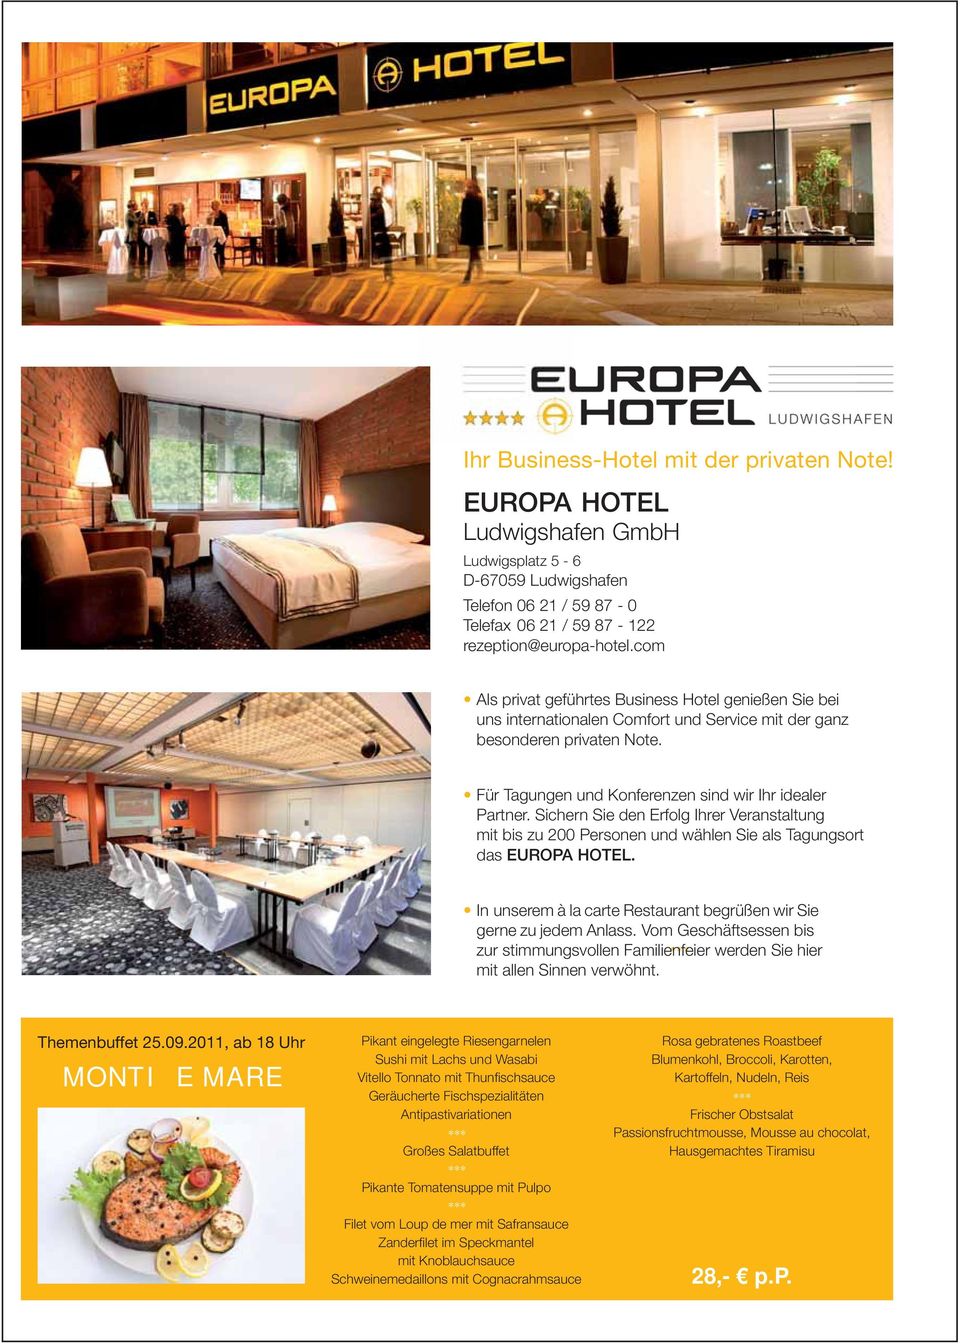 Sichern Sie den Erfolg Ihrer Veranstaltung mit bis zu 200 Personen und wählen Sie als Tagungsort das EUROPA HOTEL. In unserem à la carte Restaurant begrüßen wir Sie gerne zu jedem Anlass.